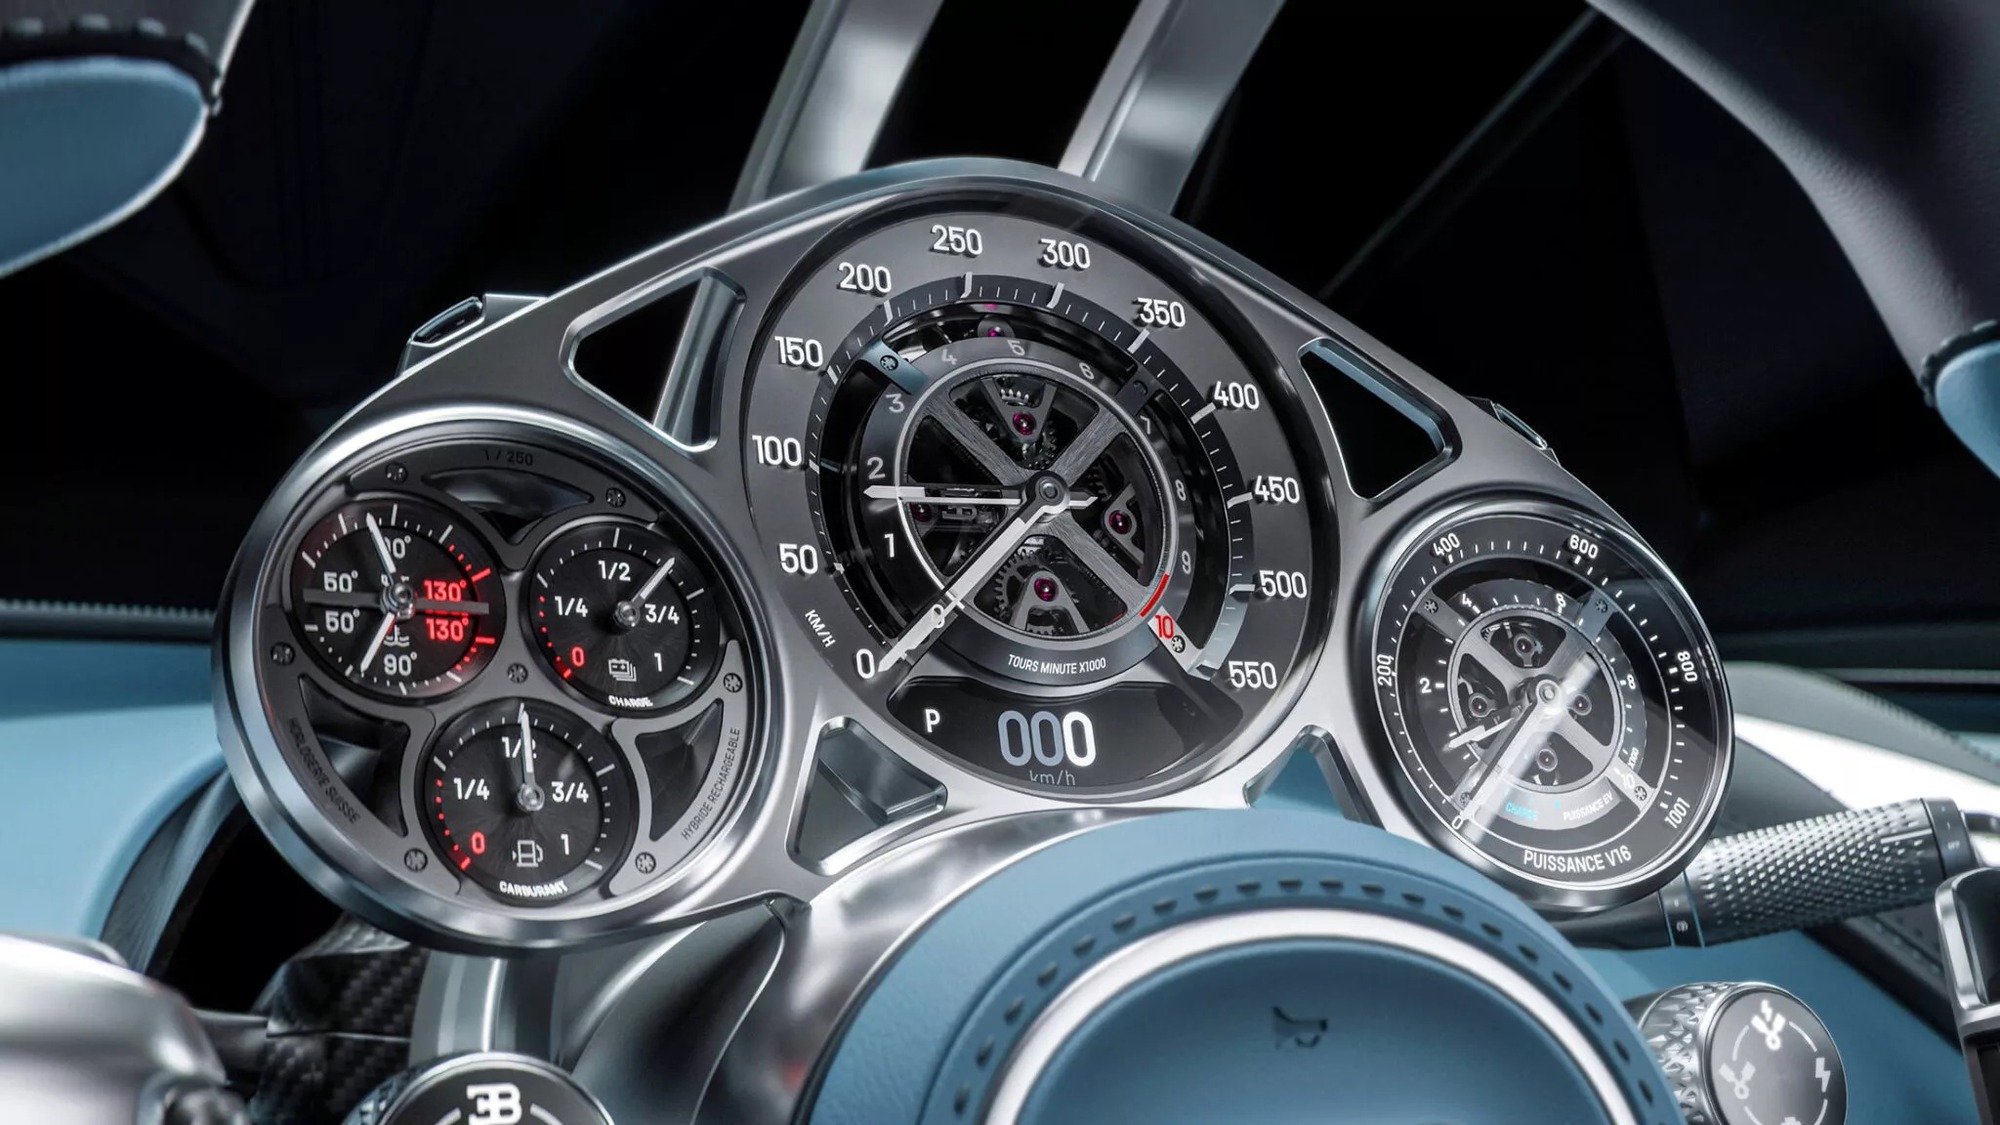 Bugatti Tourbillon Hybrid ra mắt: Mọi thông số khủng hơn Chiron, 0-100km/h chỉ trong 2 giây, tối đa 445km/h- Ảnh 3.